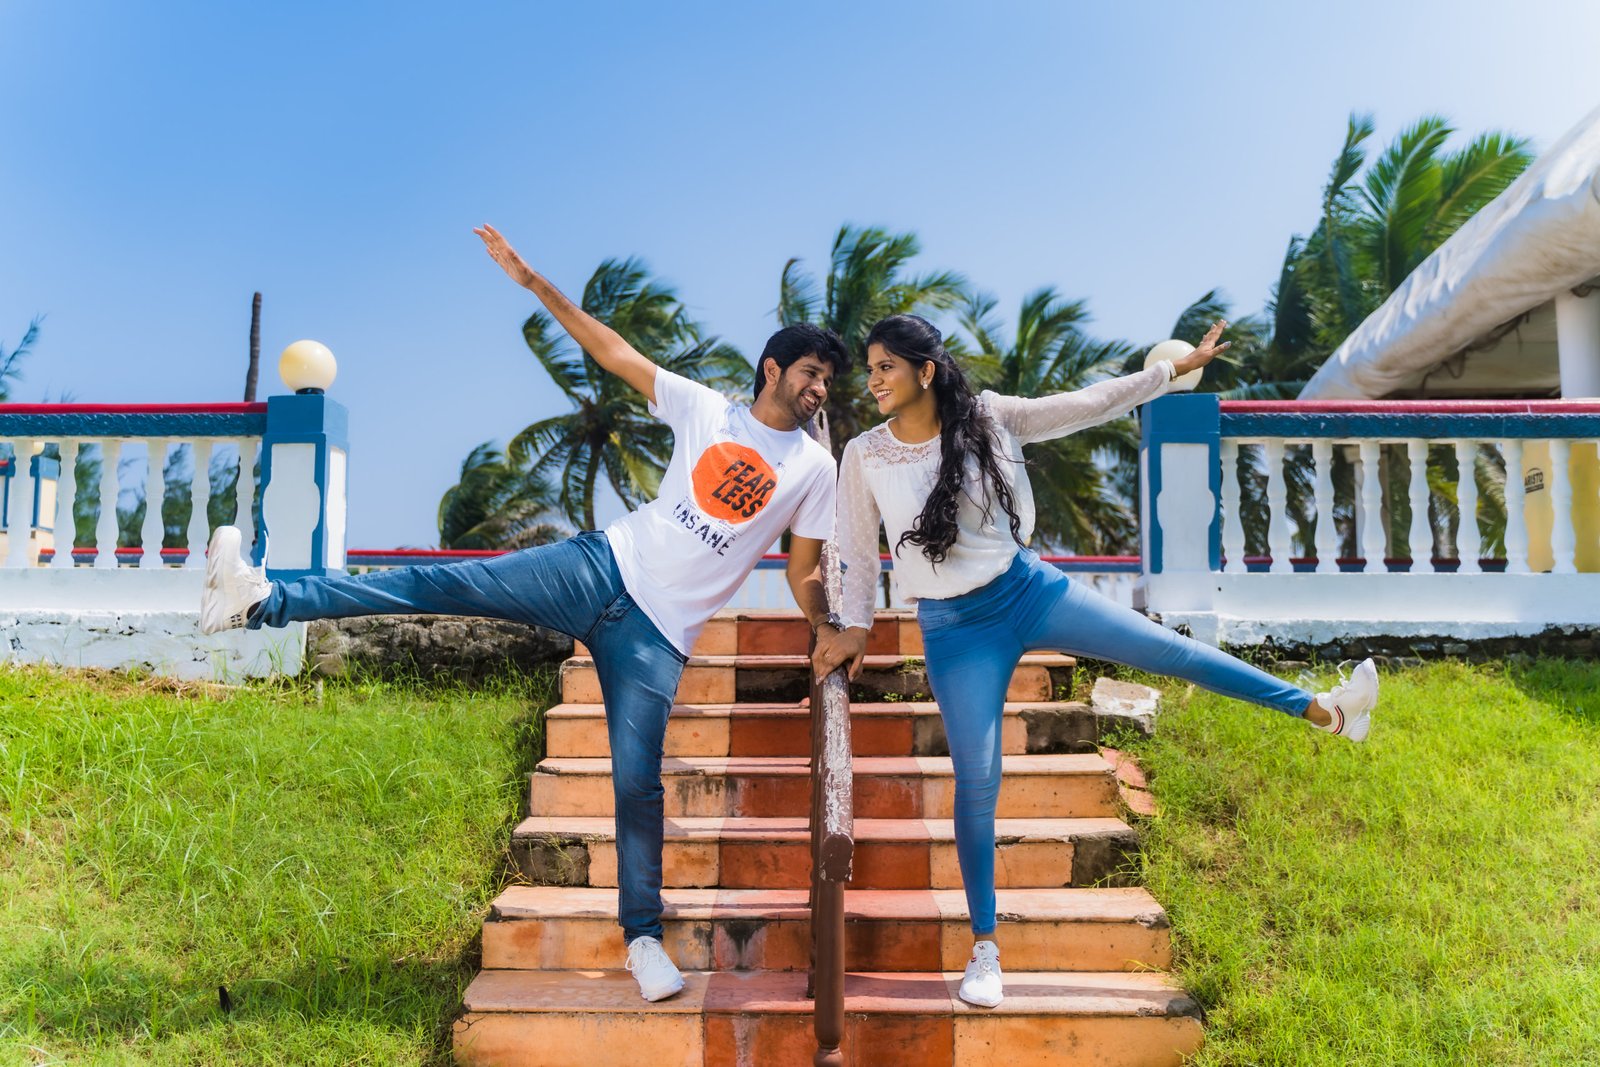 12 romantic Bollywood elements to add in your pre-wedding shoot | by Priya  | Medium